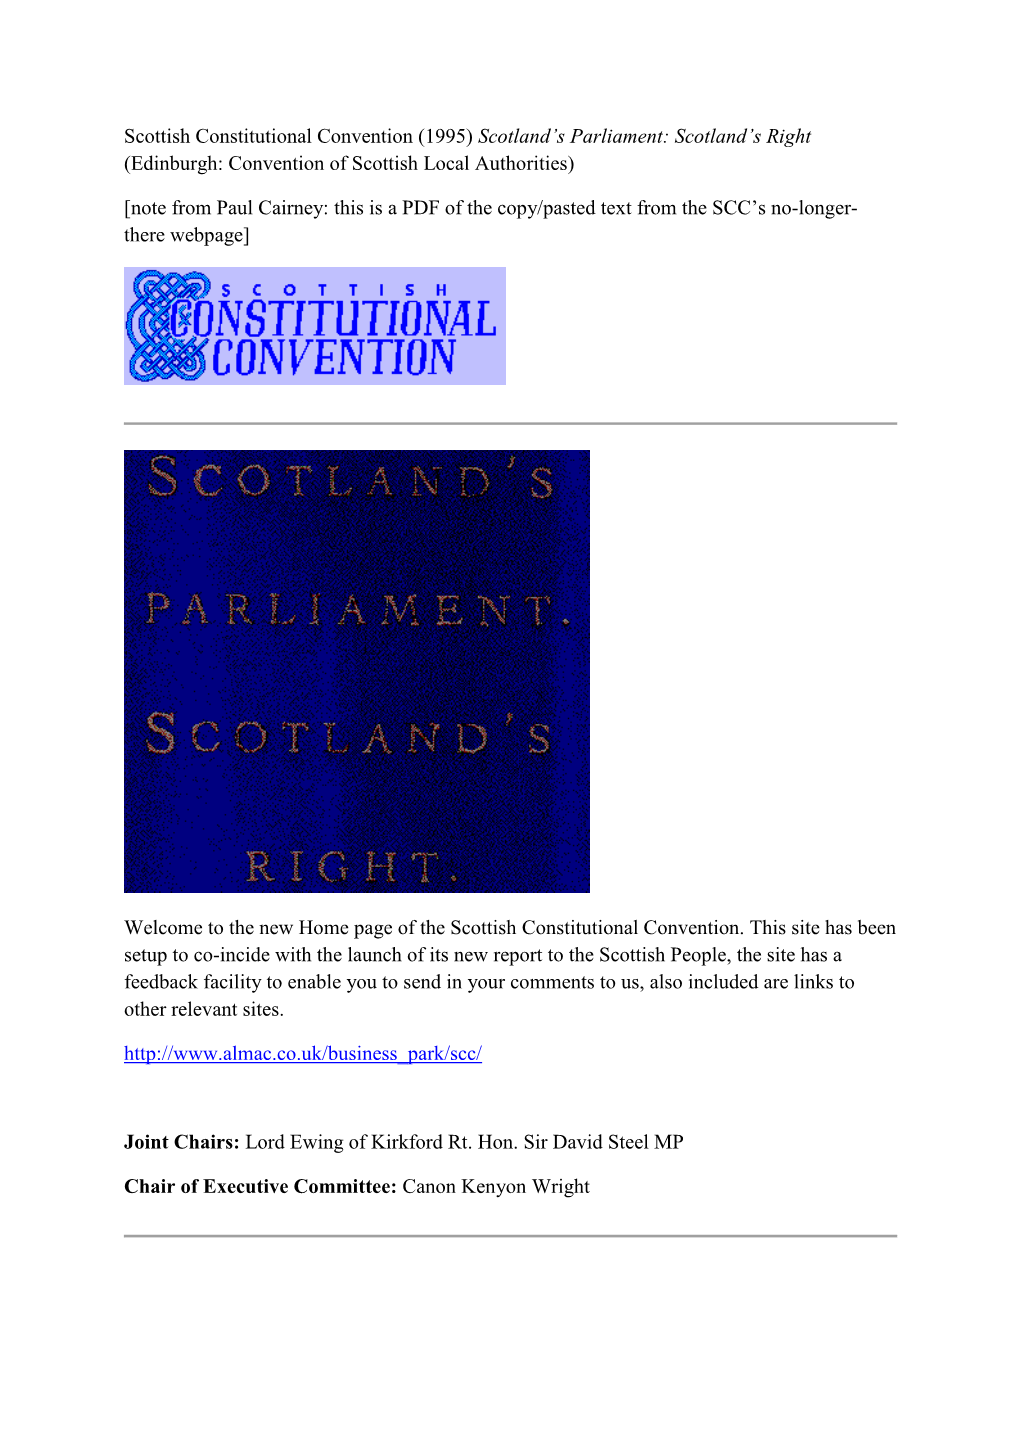 Scottish Constitutional Convention (1995) Scotland’S Parliament: Scotland’S Right (Edinburgh: Convention of Scottish Local Authorities)